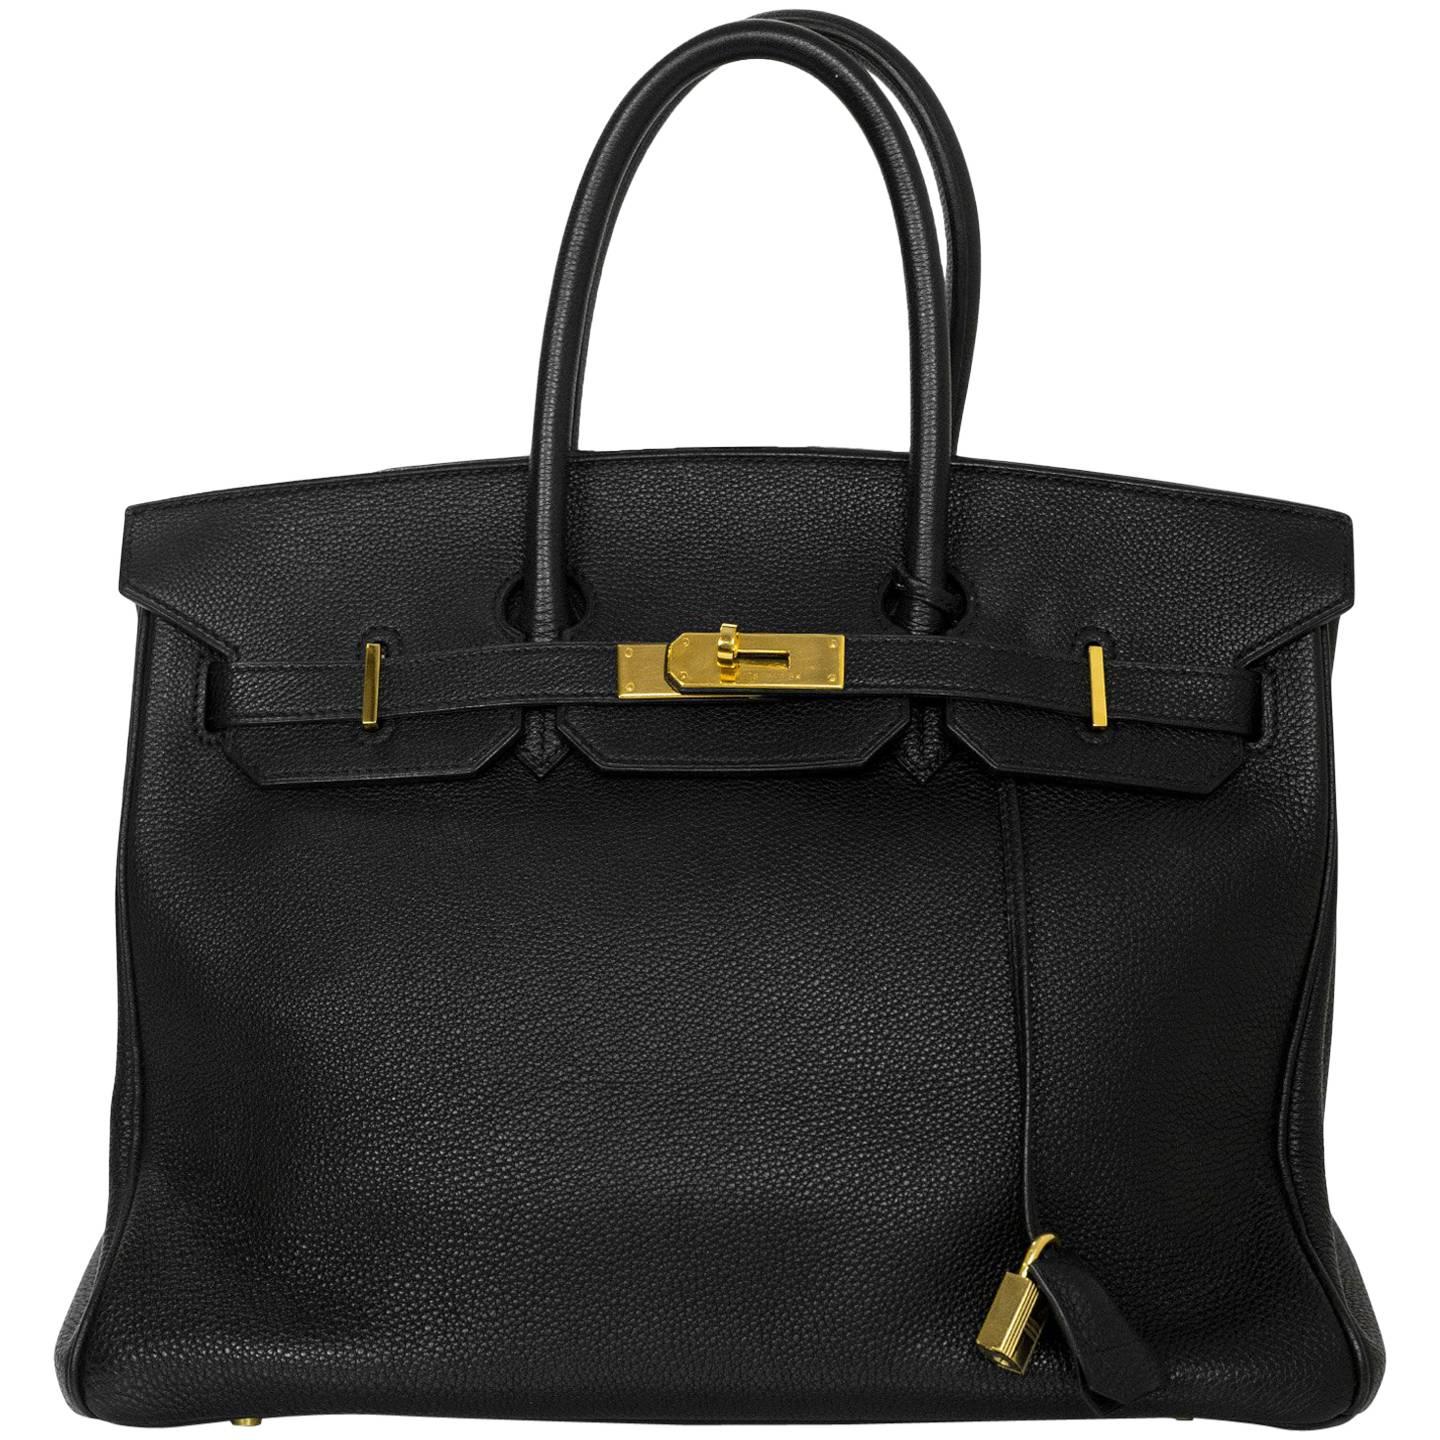 Hermes 2003 Black Togo Leather 35cm Birkin Bag w/ Gold Hardware